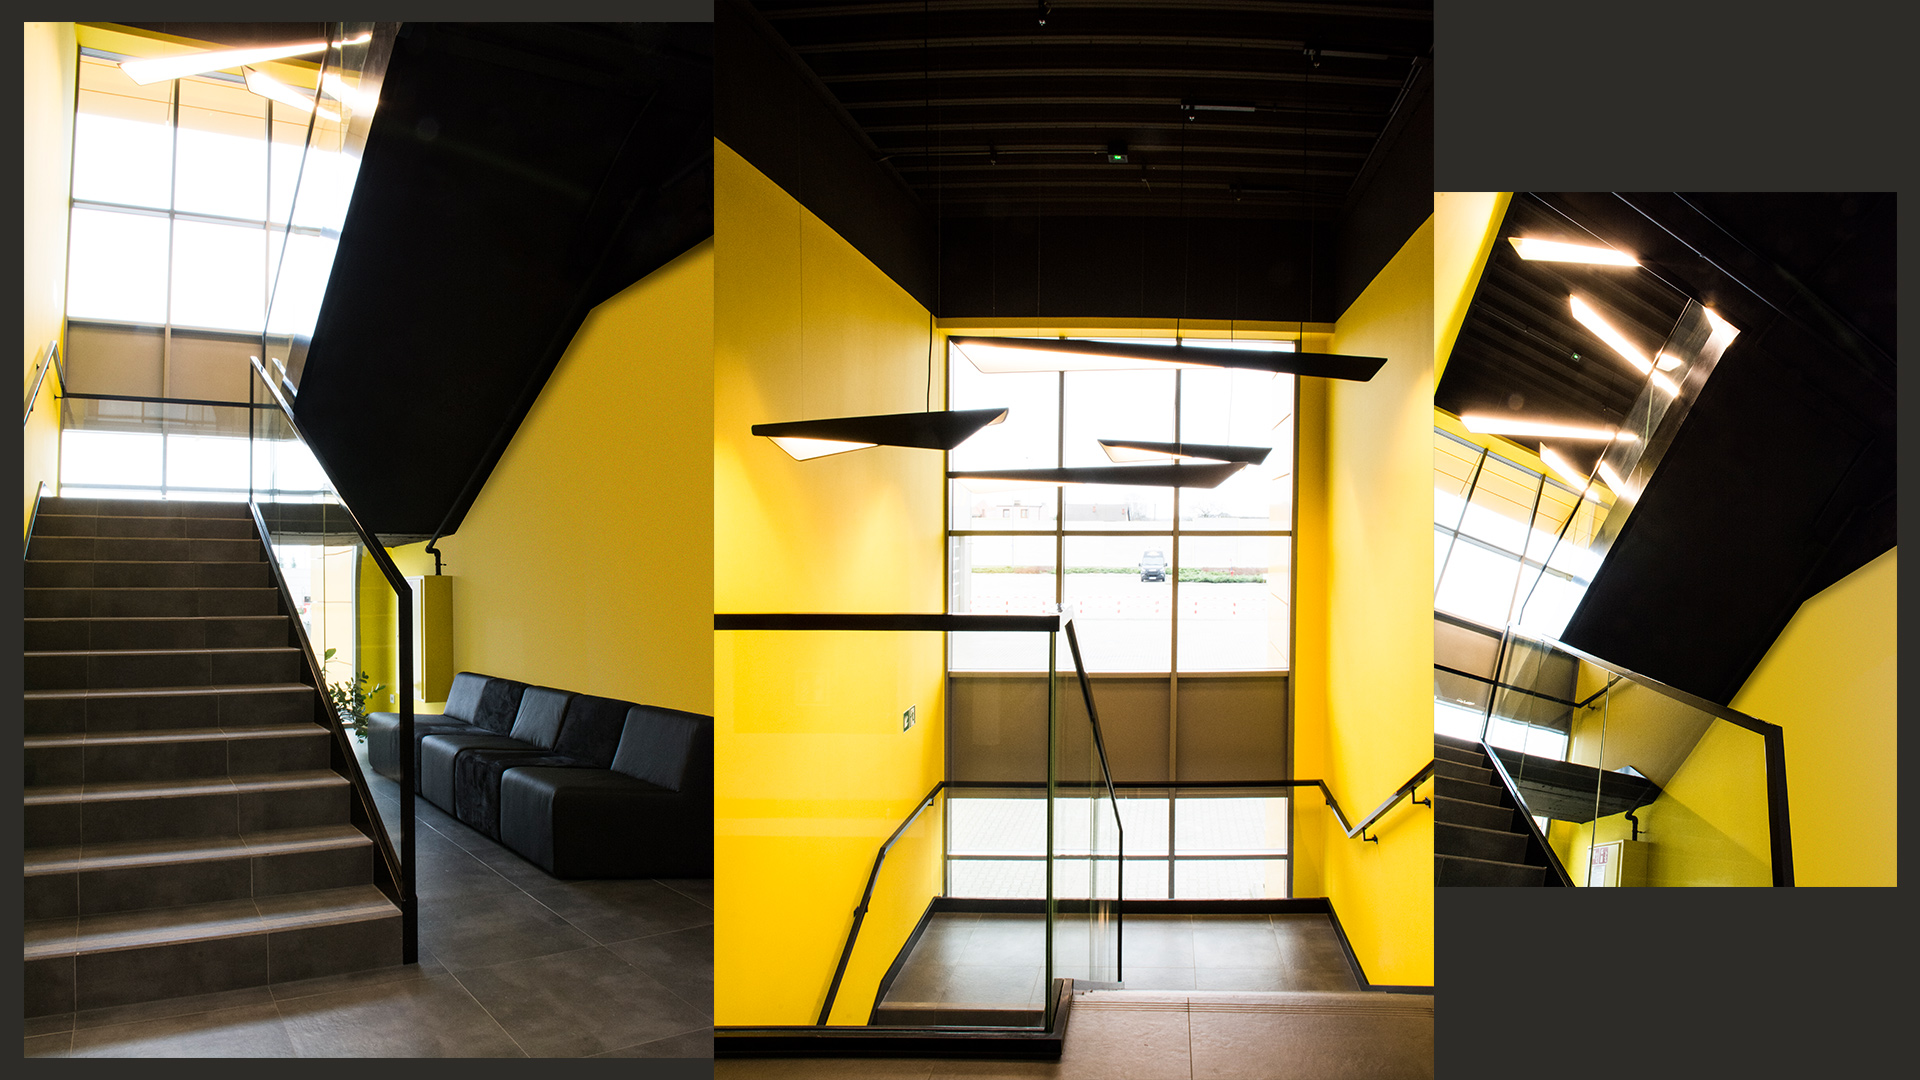 Klatka schodowa ma mocne akcenty kolorystyczne: żółte ściany kontrastują z pozostałymi czarnymi elementami wyposażenia. Pod schodami – autorska modułowa sofa, realizowana na wymiar.